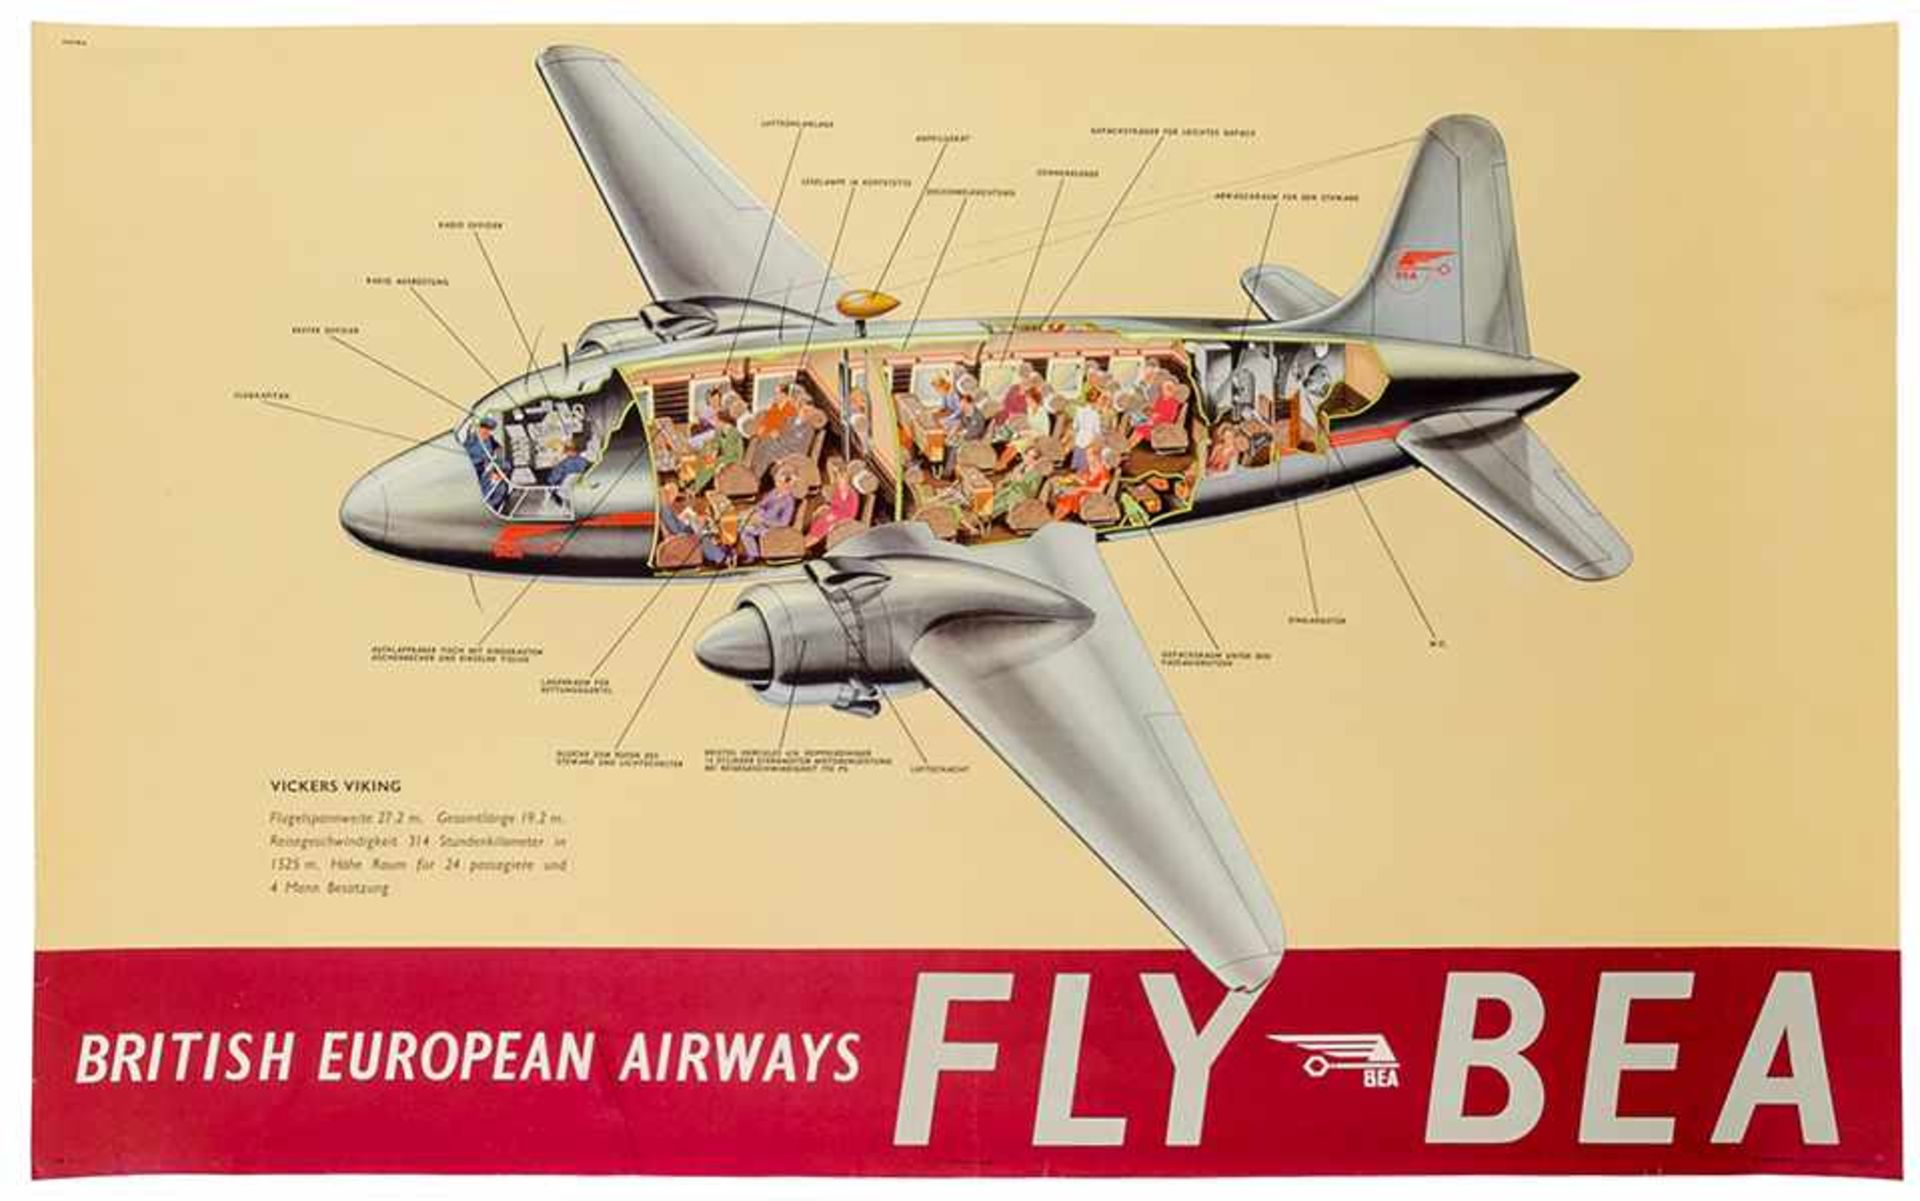 Plakate - - British European Airways - Fly BEA. Farbiges Plakat. Offset. York und London, Druck